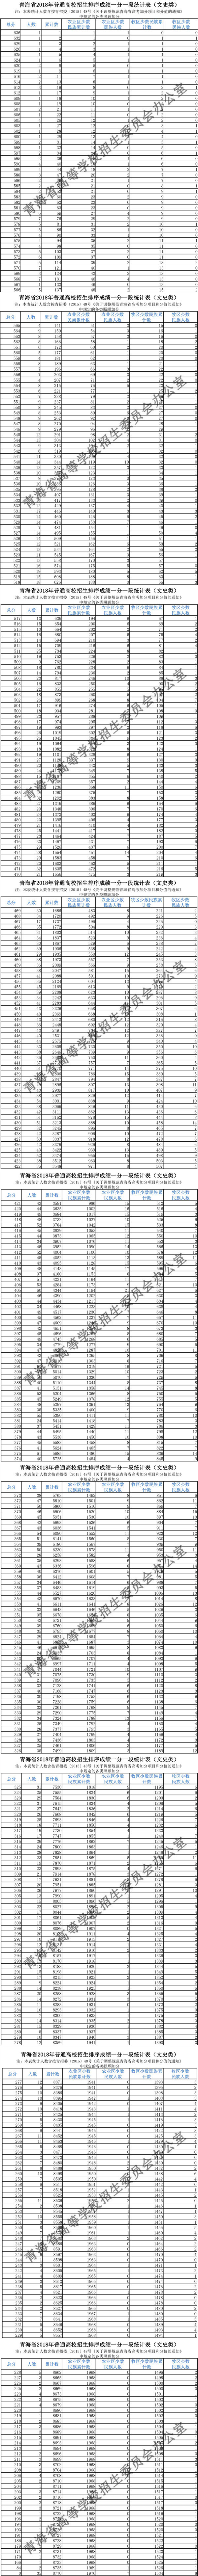 2016高考文科数学全国卷1|2016青海高考文科一分一段明细表